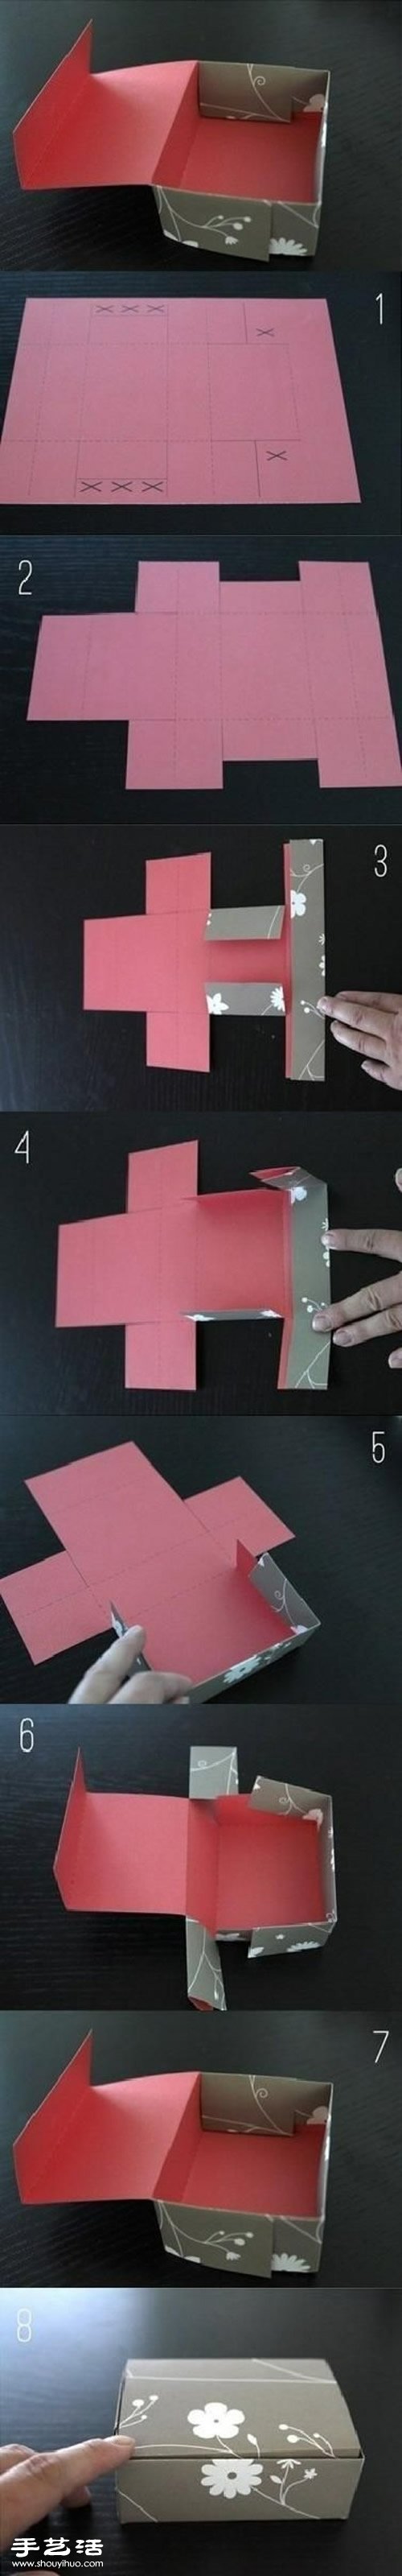 折纸礼品盒包装盒子图解教程